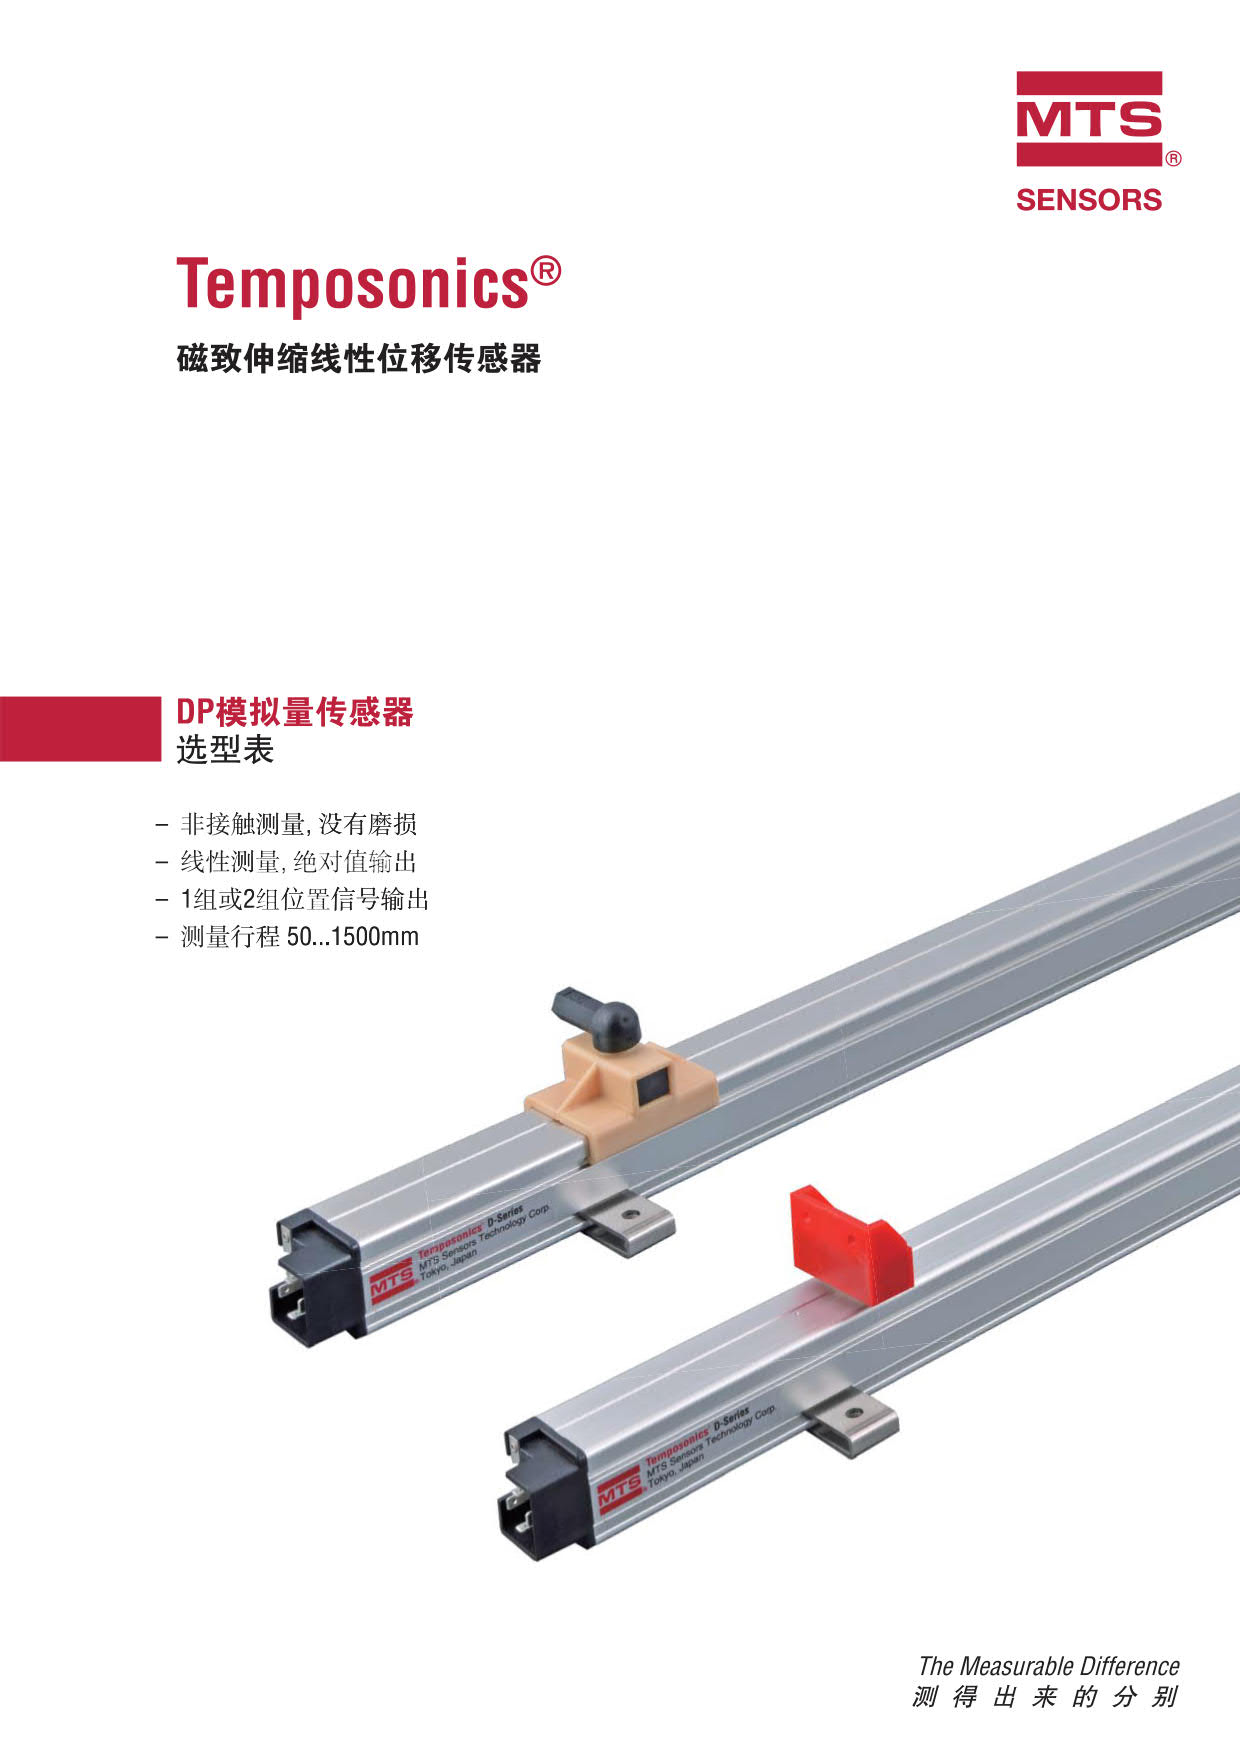 工业用途传感器|Temposonic® D系列传感器